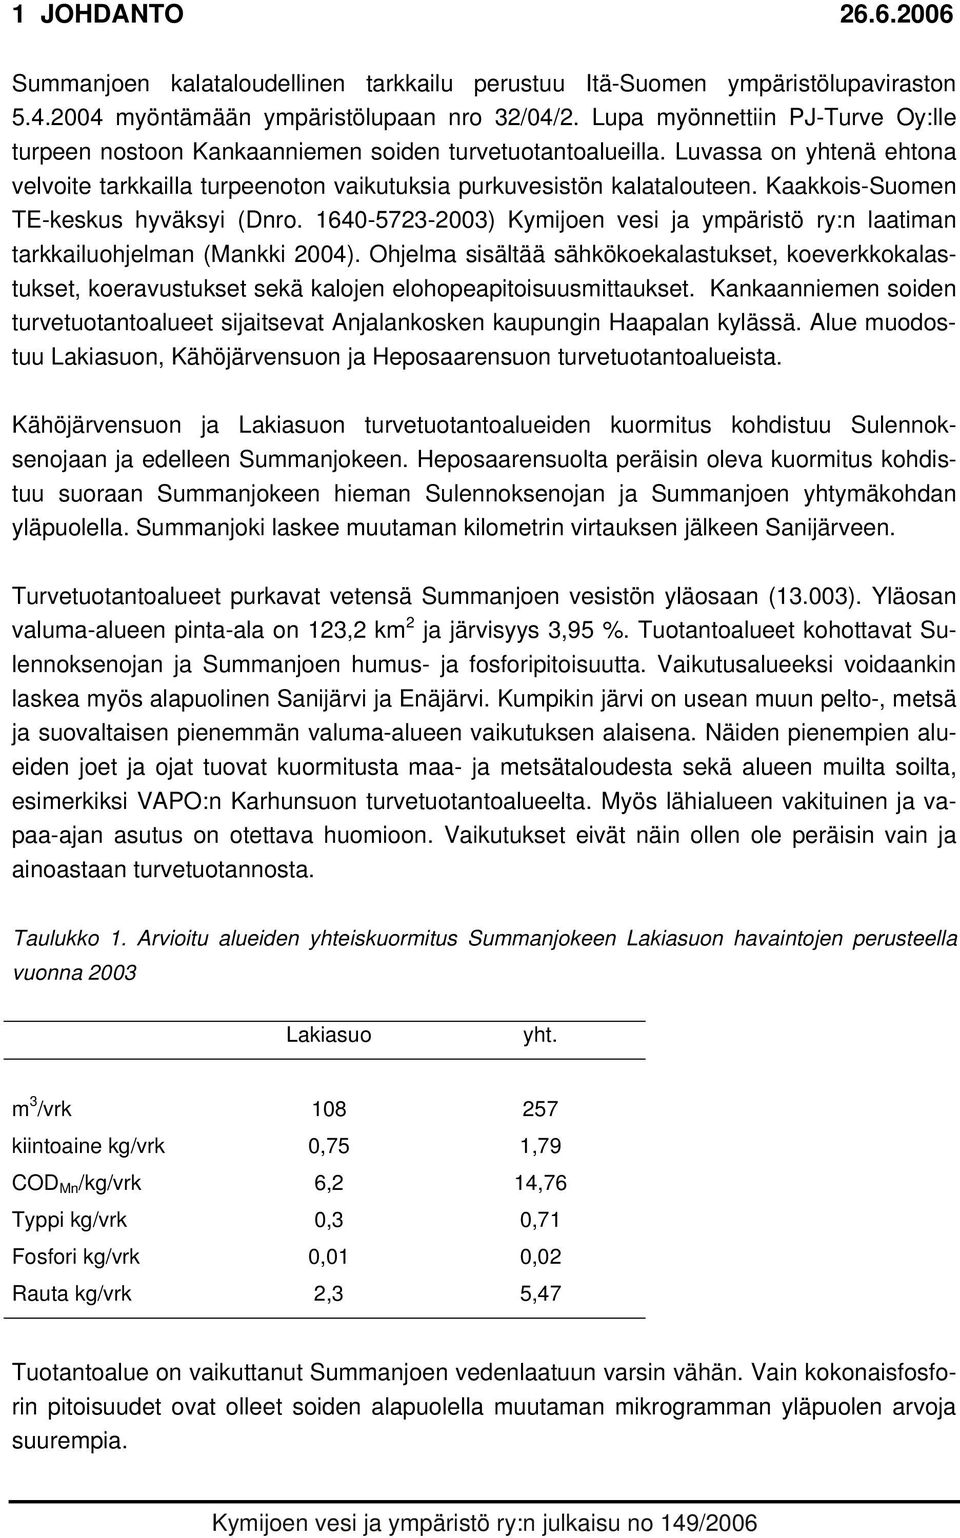 Kaakkois-Suomen TE-keskus hyväksyi (Dnro. 1640-5723-2003) Kymijoen vesi ja ympäristö ry:n laatiman tarkkailuohjelman (Mankki 2004).